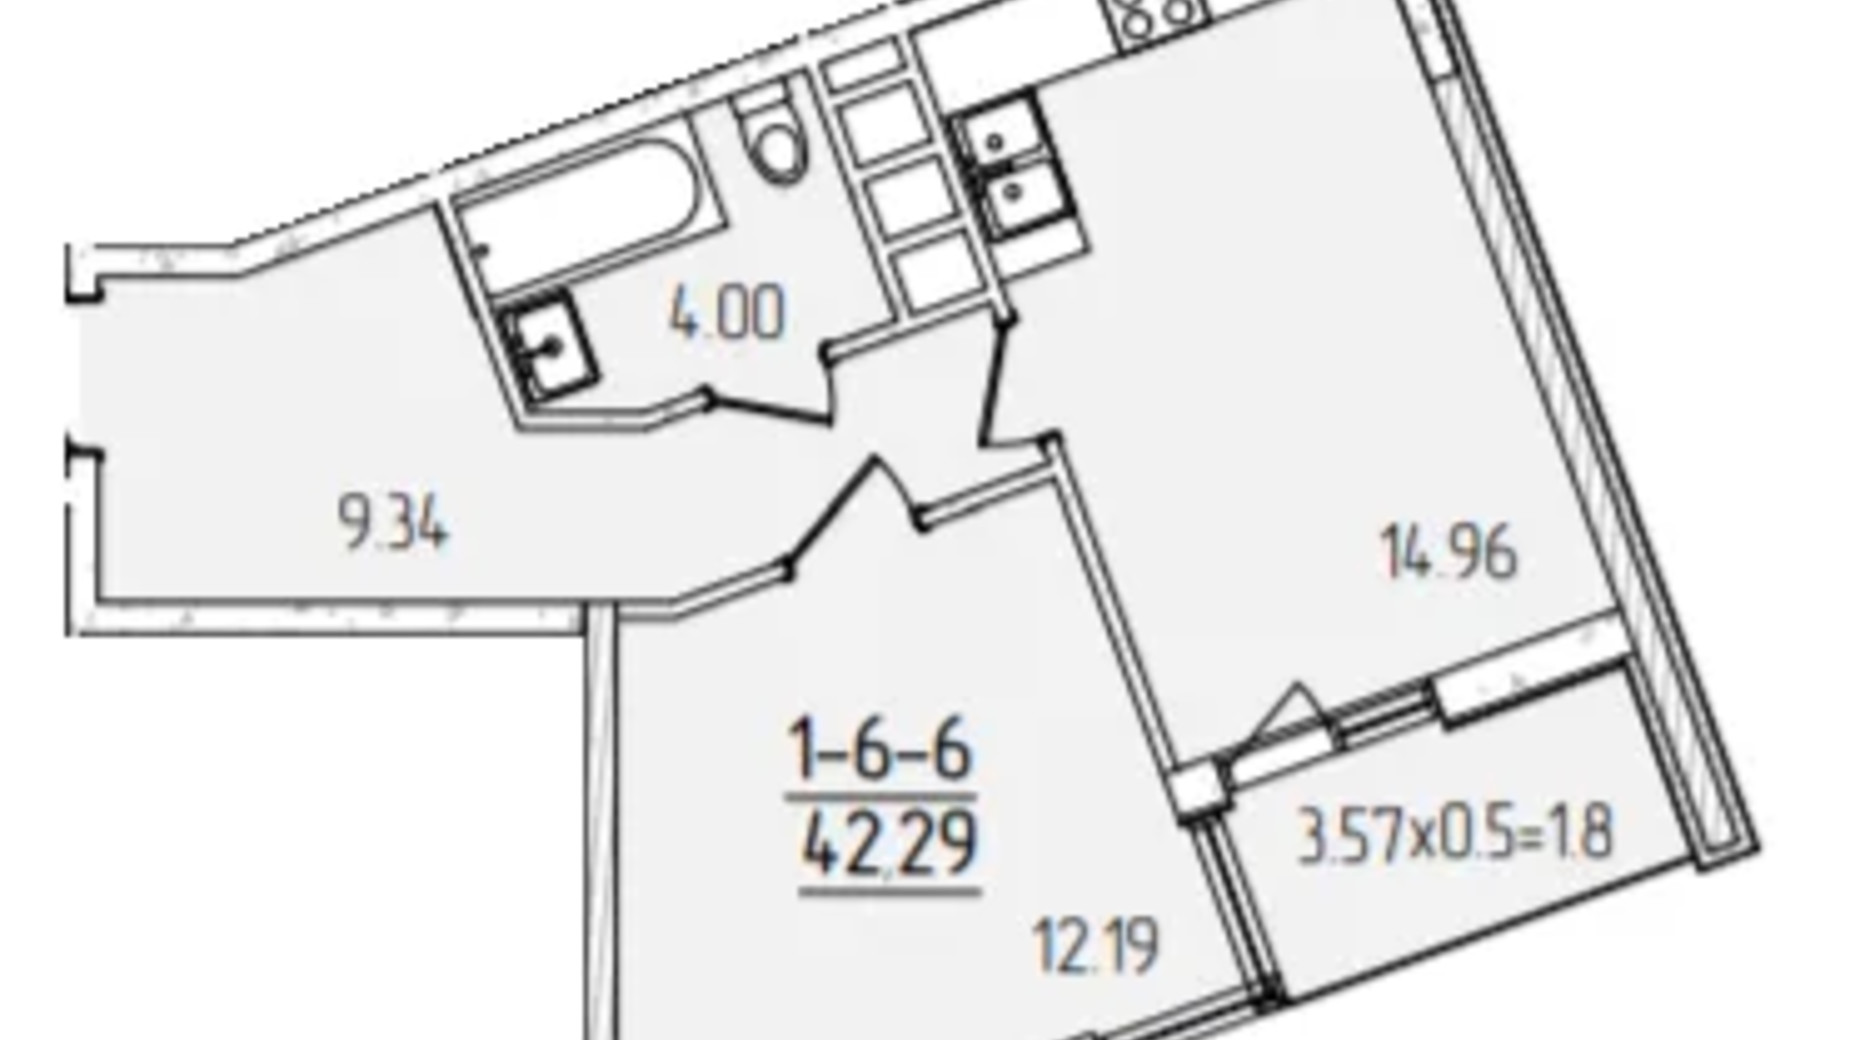 Планировка 1-комнатной квартиры в ЖК Kadorr City 42.29 м², фото 606688